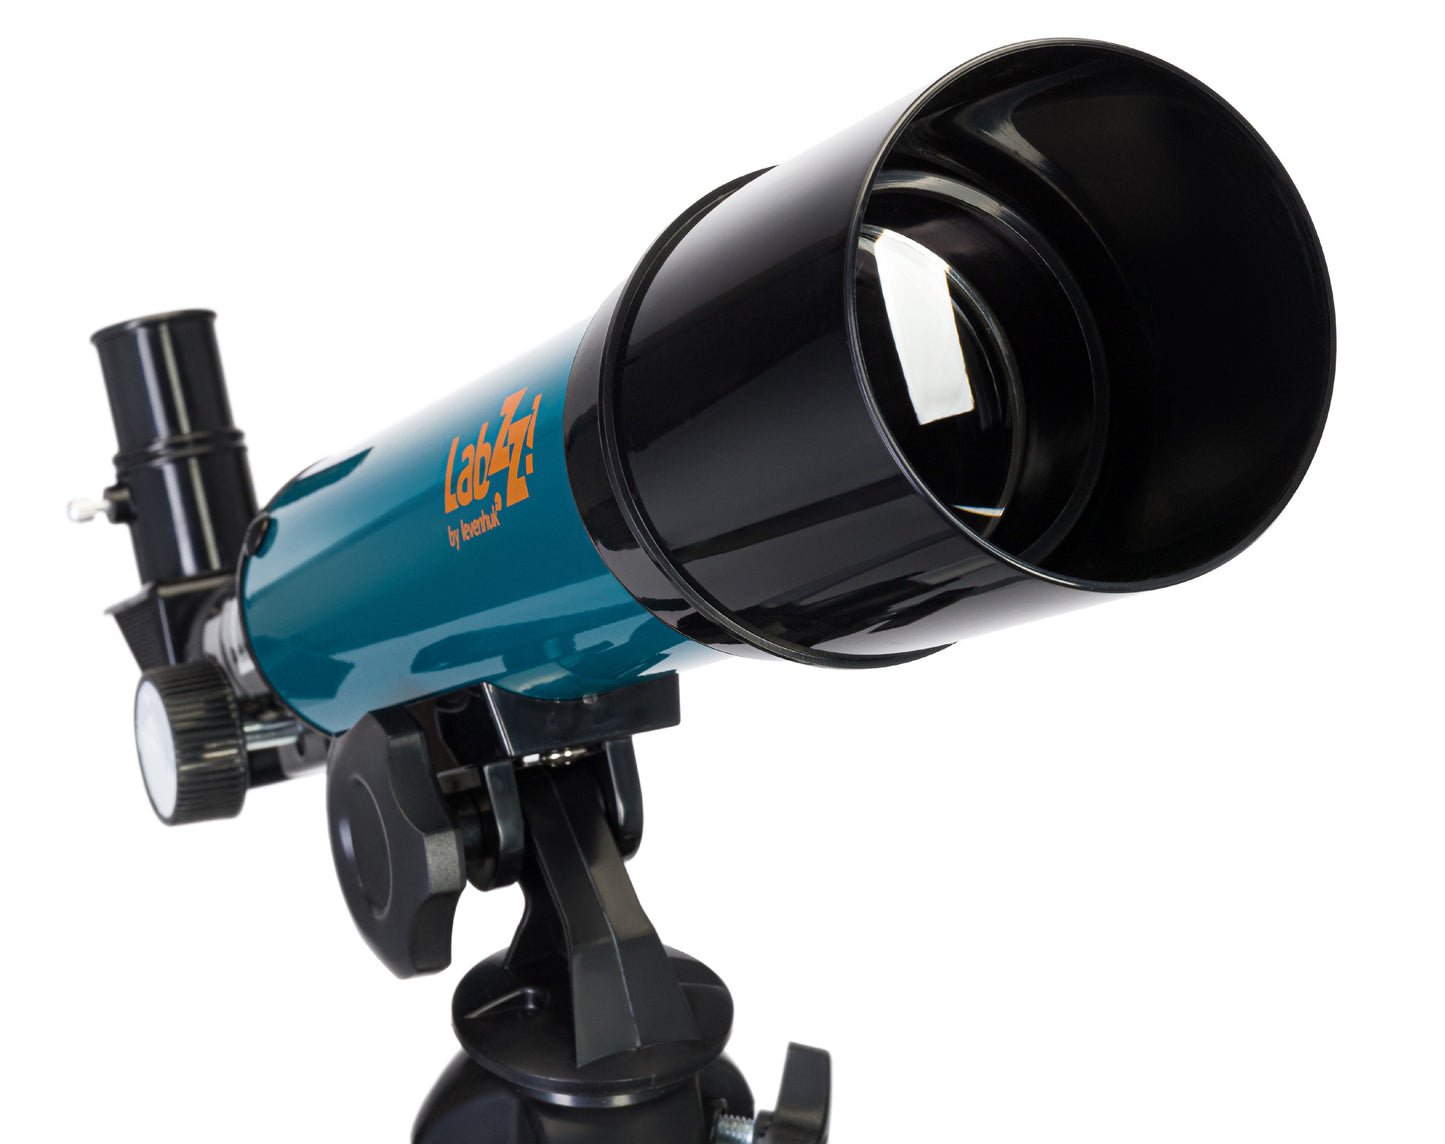 LabZZ TK 50/300 AZ Telescope with Case